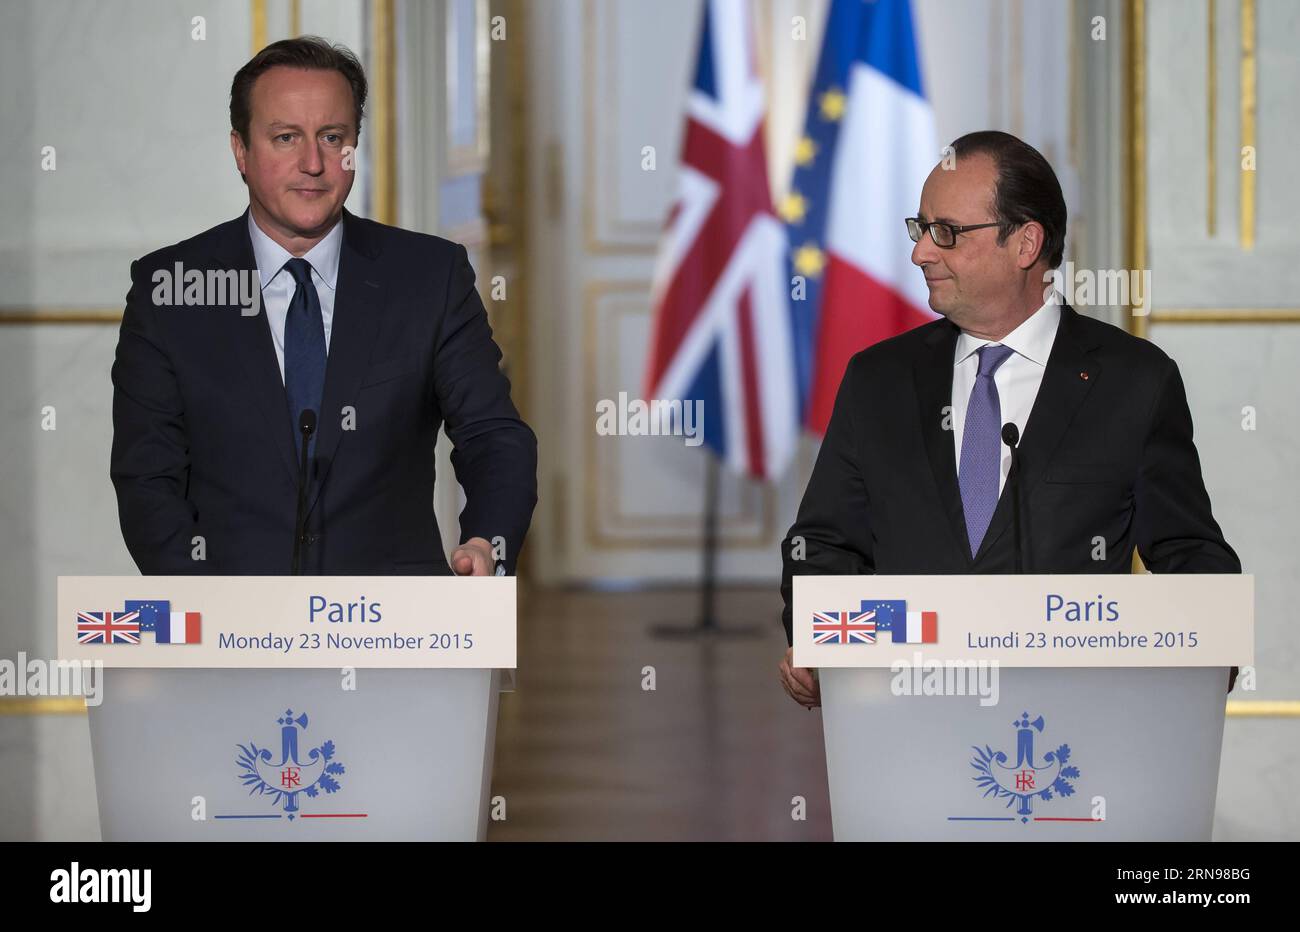 (151123) -- PARIGI, 23 novembre 2015 -- il primo ministro britannico David Cameron (L) e il presidente francese Francois Hollande partecipano a una conferenza stampa congiunta a Parigi, in Francia, 23 novembre 2015. Durante una visita qui, il primo ministro britannico David Cameron lunedì ha detto che la Gran Bretagna dovrebbe unirsi alla coalizione guidata dagli Stati Uniti che combatte lo Stato islamico (IS) in Siria, sottolineando la necessità di effettuare attacchi aerei per sradicare la cellula islamista. FRANCE-PARIS-BRITAIN-ANTI IS-MEETING THEOxDUVAL PUBLICATIONxNOTxINxCHN 151123 Parigi Nov 23 2015 i primi ministri britannici David Cameron l e il presidente francese Francois Hollande atte Foto Stock